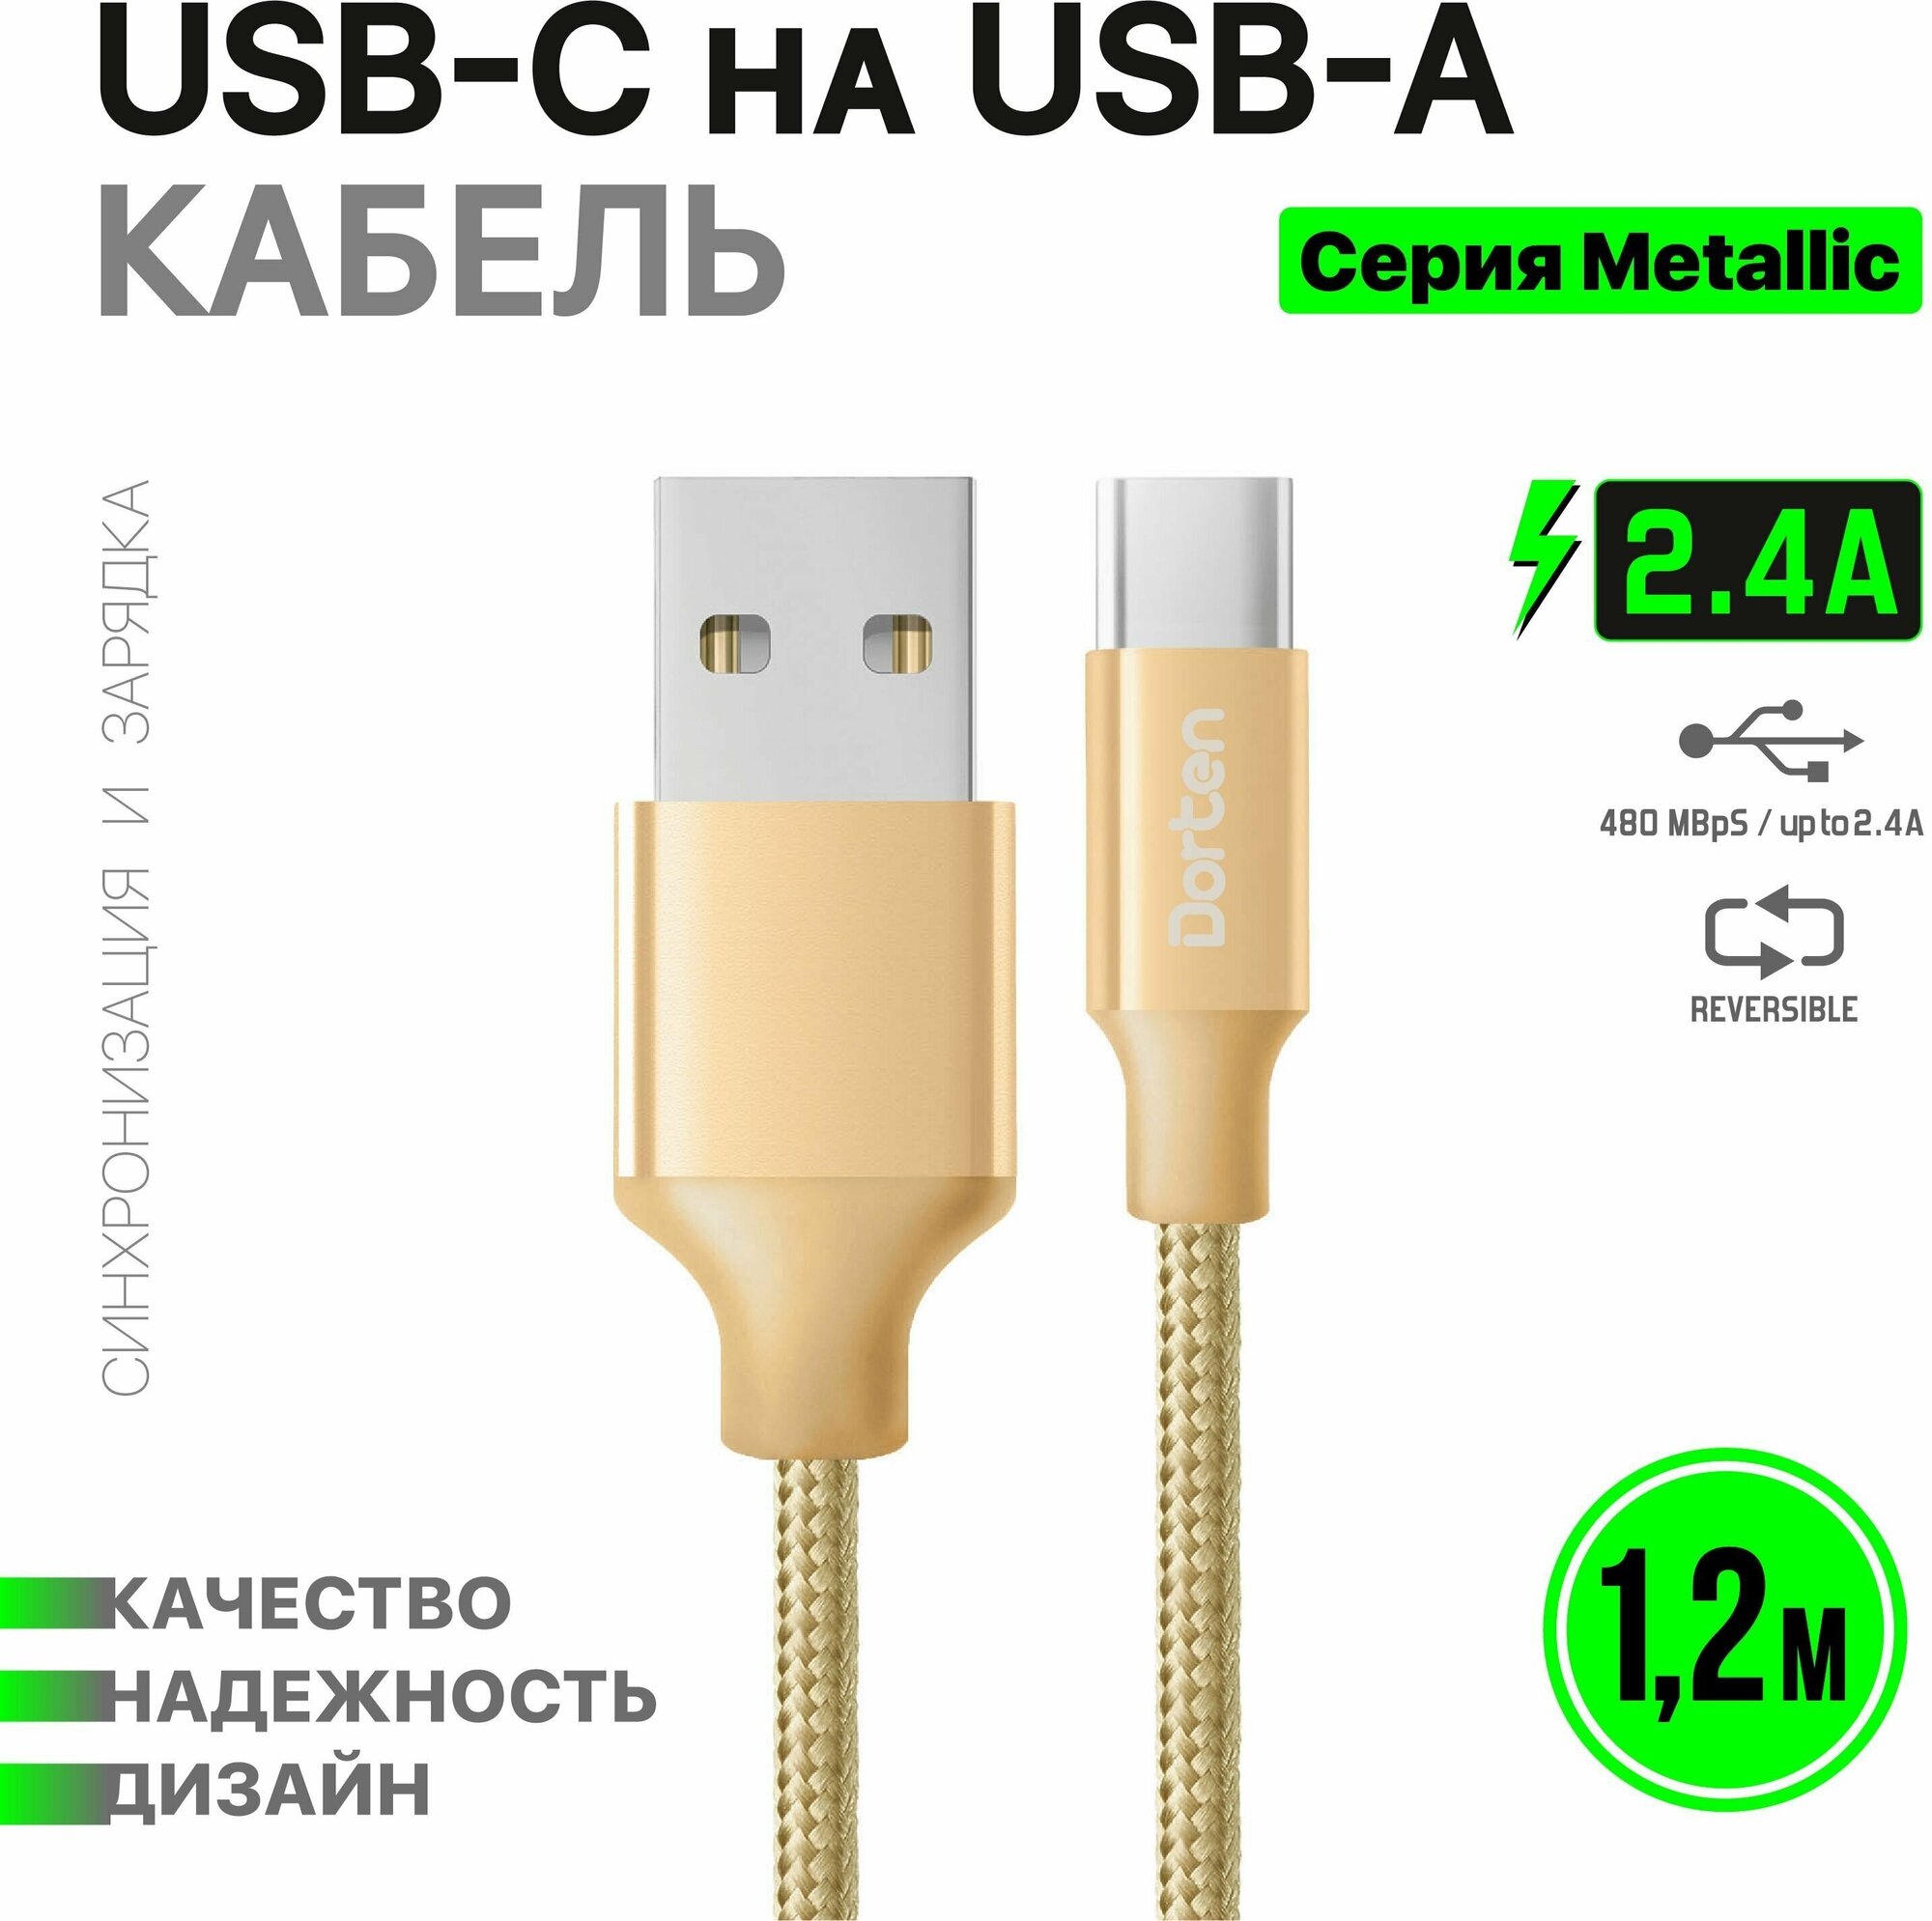 Кабель USB-C для зарядки телефона 1,2 метра: Metallic series провод юсб 1,2м - Золотой